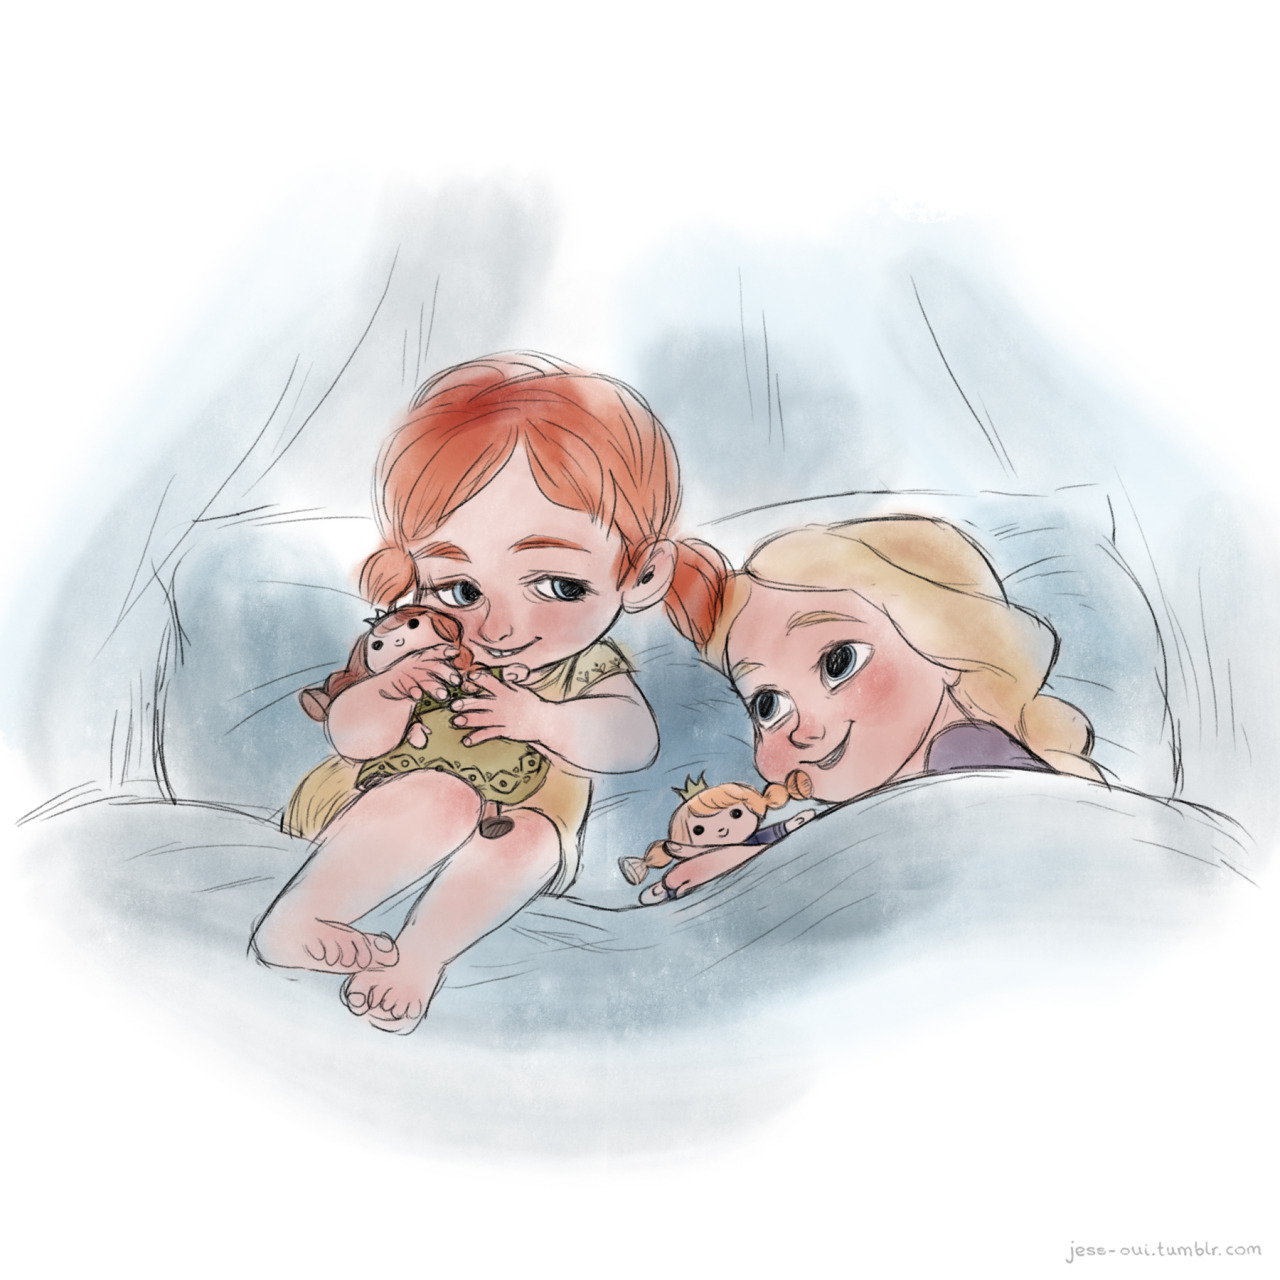 frozen - Les personnages Frozen... Enfant! - Page 3 Tumblr_ngc8ibcfbG1rzx0pqo1_1280